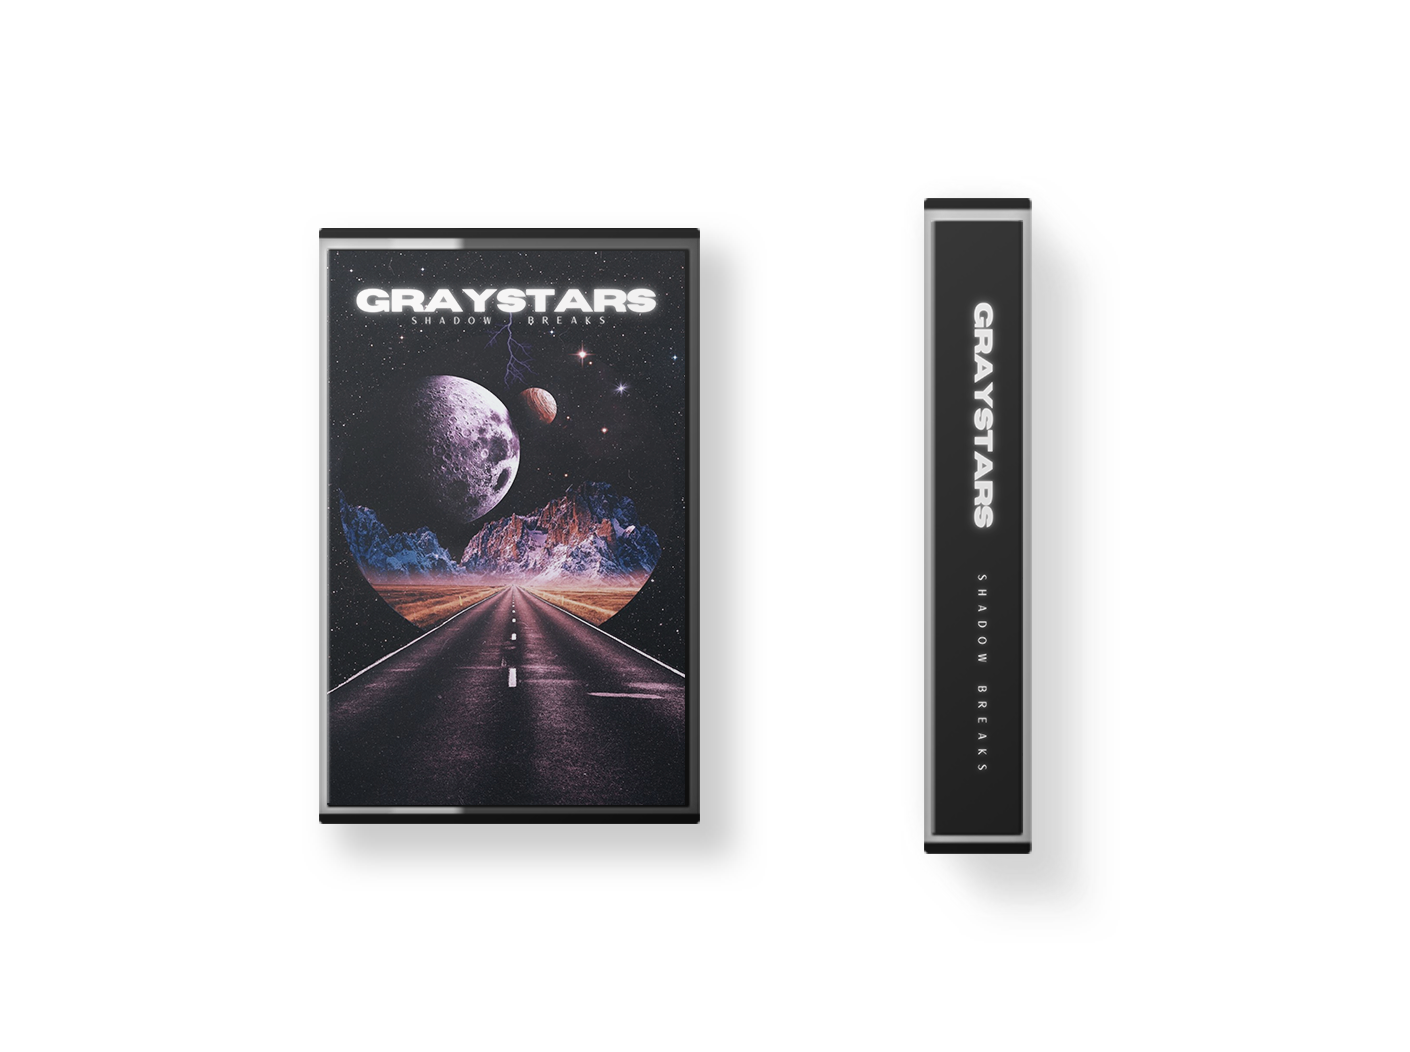 Graystars - Shadow Breaks [Cassette]